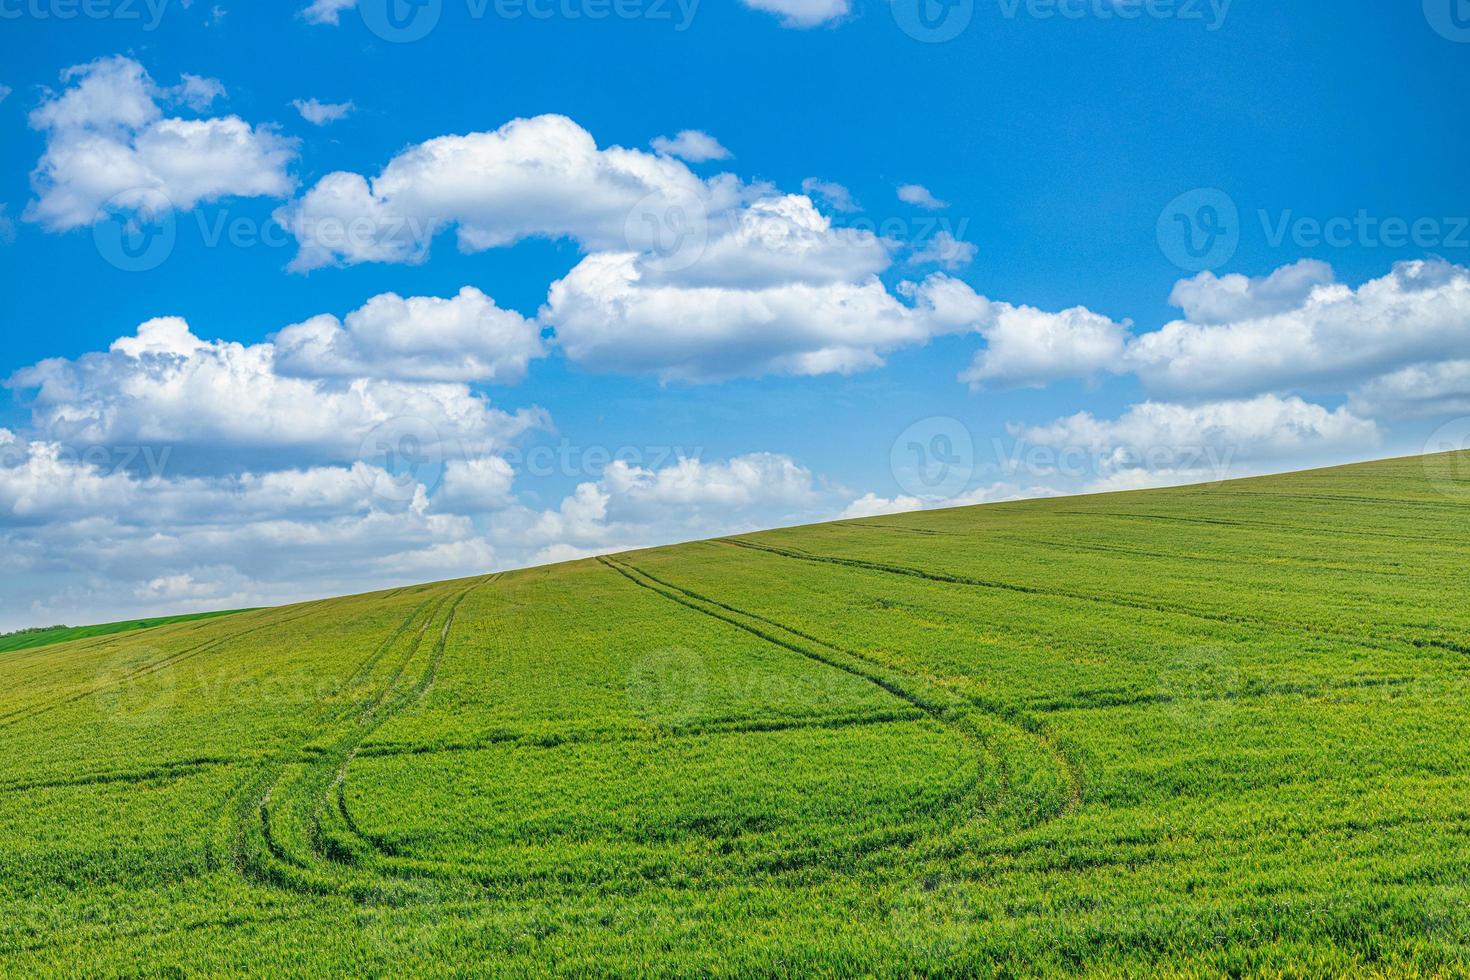 campo verde y cielo azul paisaje de campo de verde prado de hierba de trigo fresco campo idílico cálido y soleado. tranquilo primavera verano naturaleza hermoso paisaje de fondo. naturaleza idílica agricultura ecológica foto